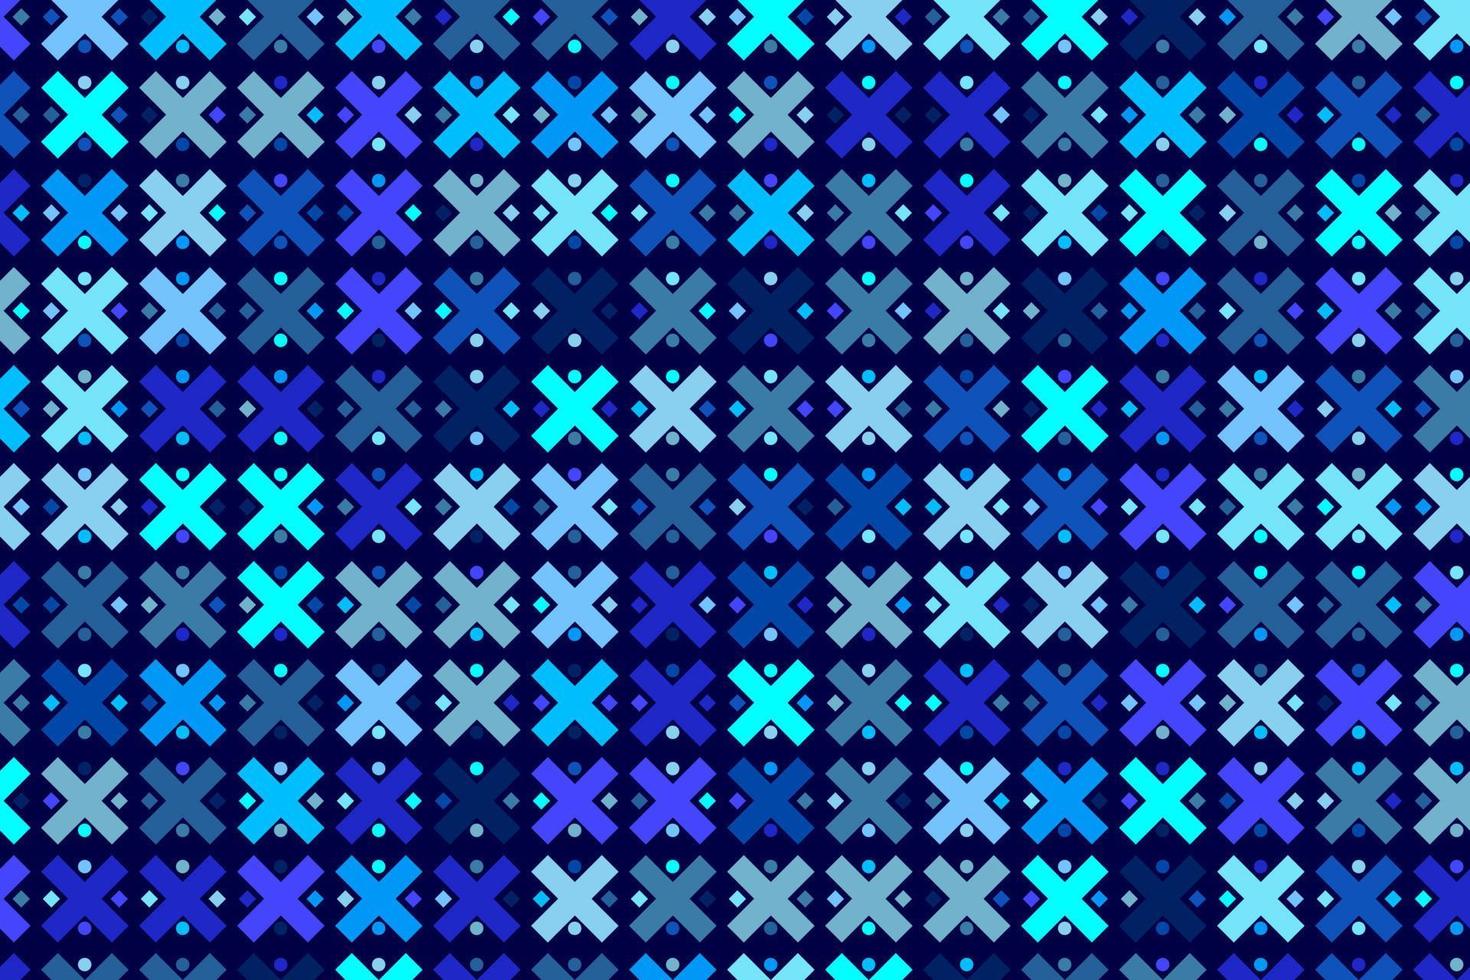 mönster med geometrisk element i blå toner abstrakt lutning bakgrund vektor